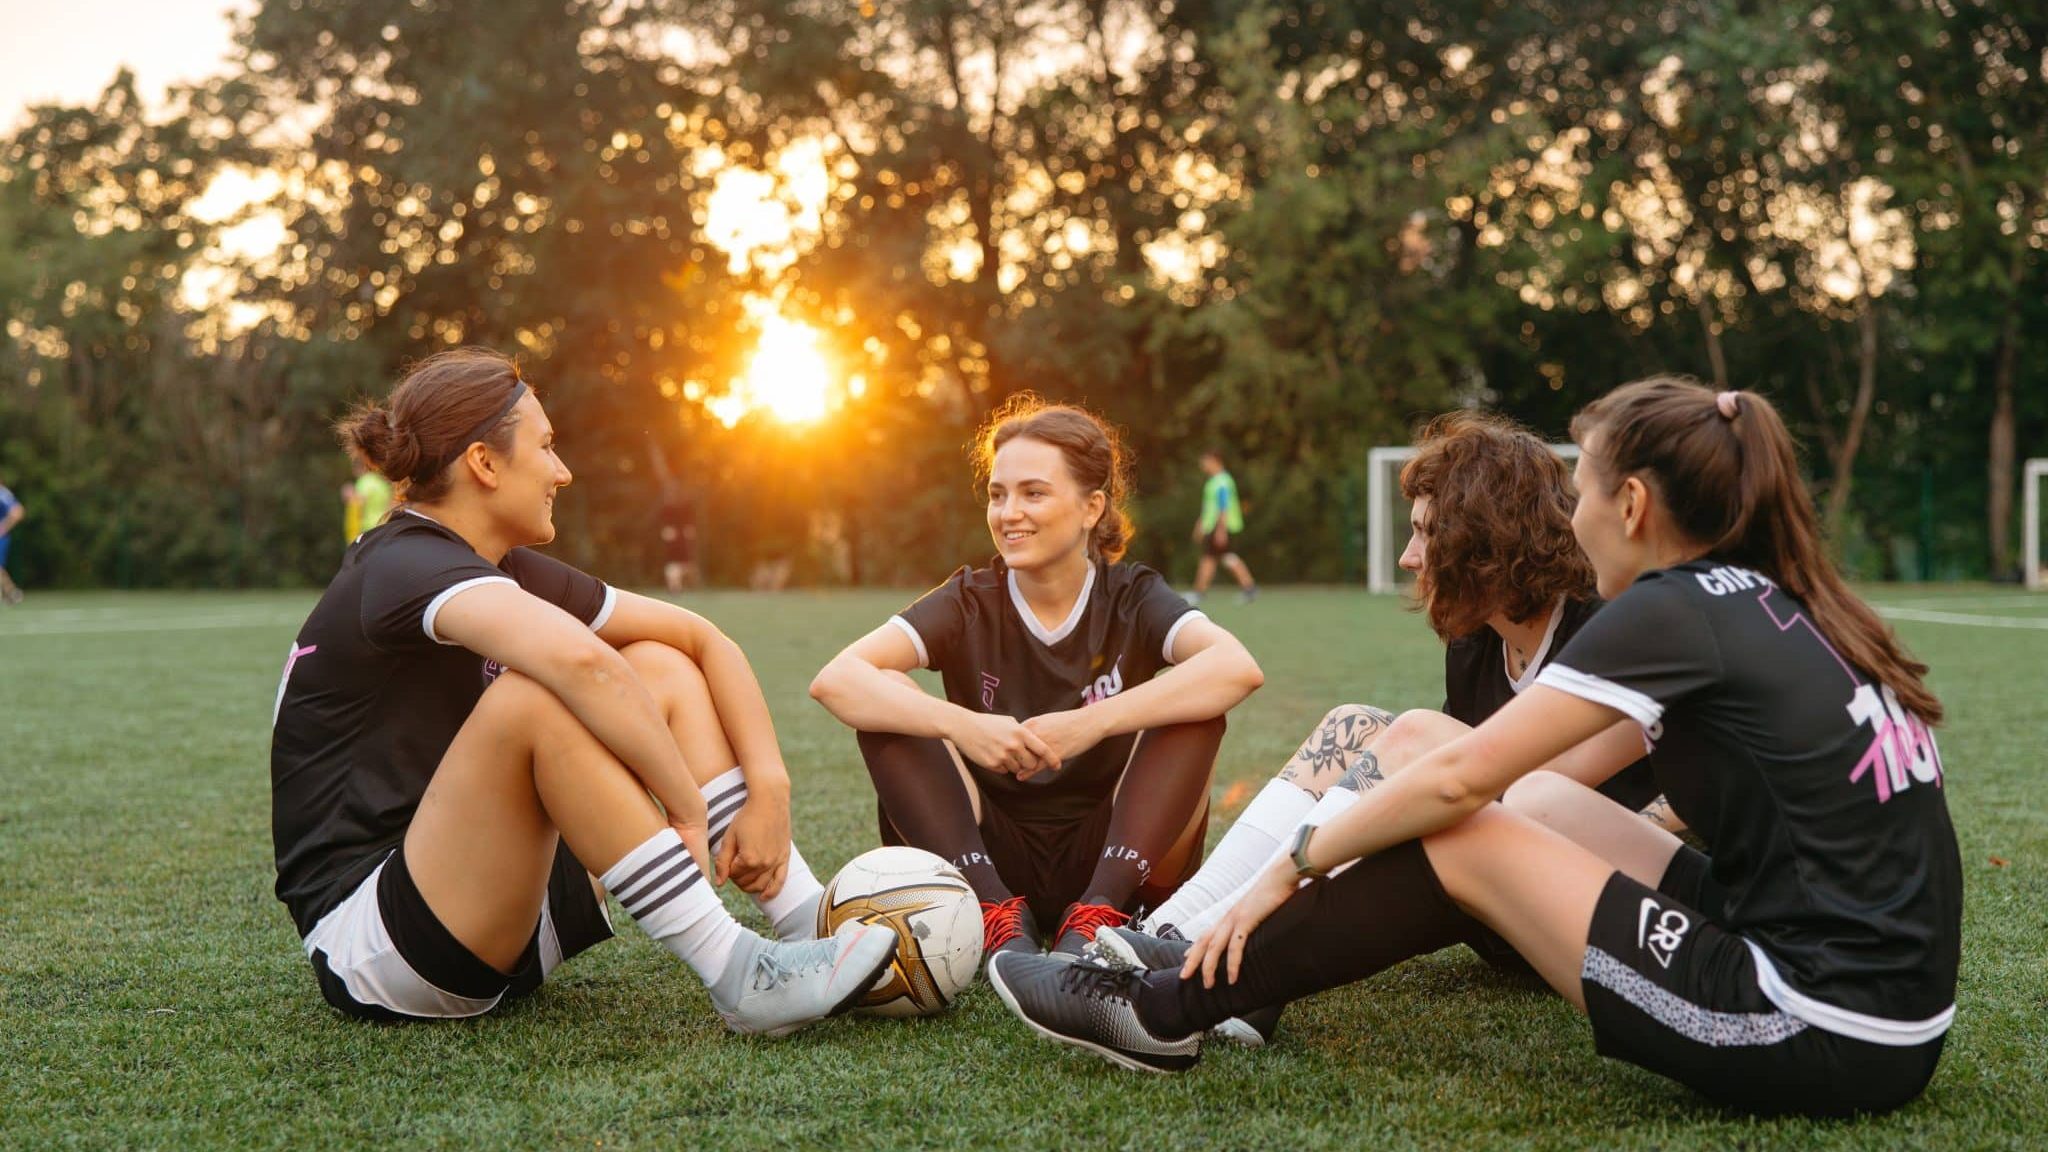 Femmes assises sur l'herbe avec un ballon de football